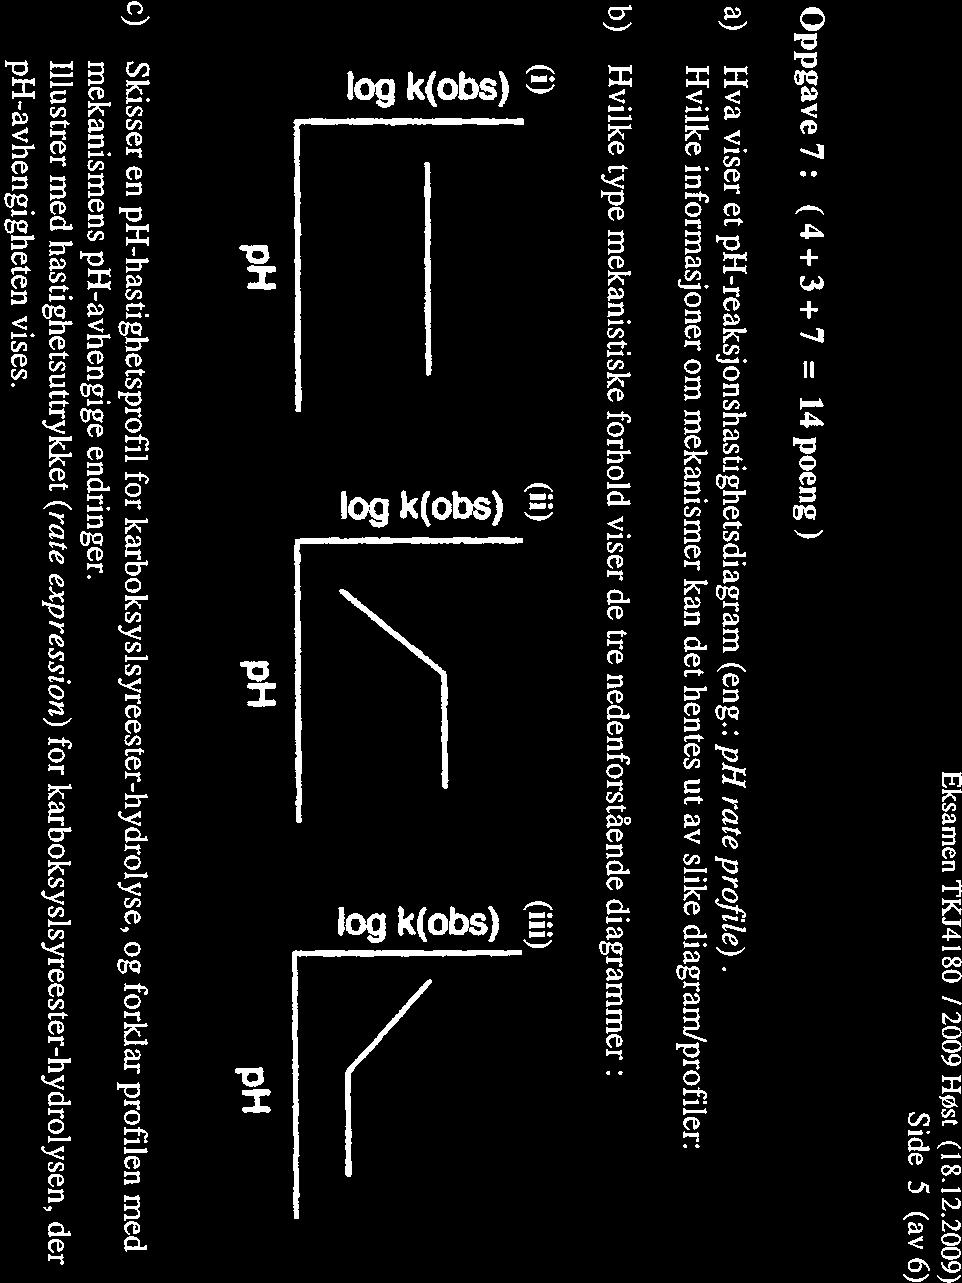 Eksamen TKJ4 180 I 2009 HØst (18.12.2009) Side 5 (av 6) Oppgave7: (4+3+7 = l4poeng) a) Hva viser et ph-reaksjonshastighetsdiagram (eng.: ph rate profile).